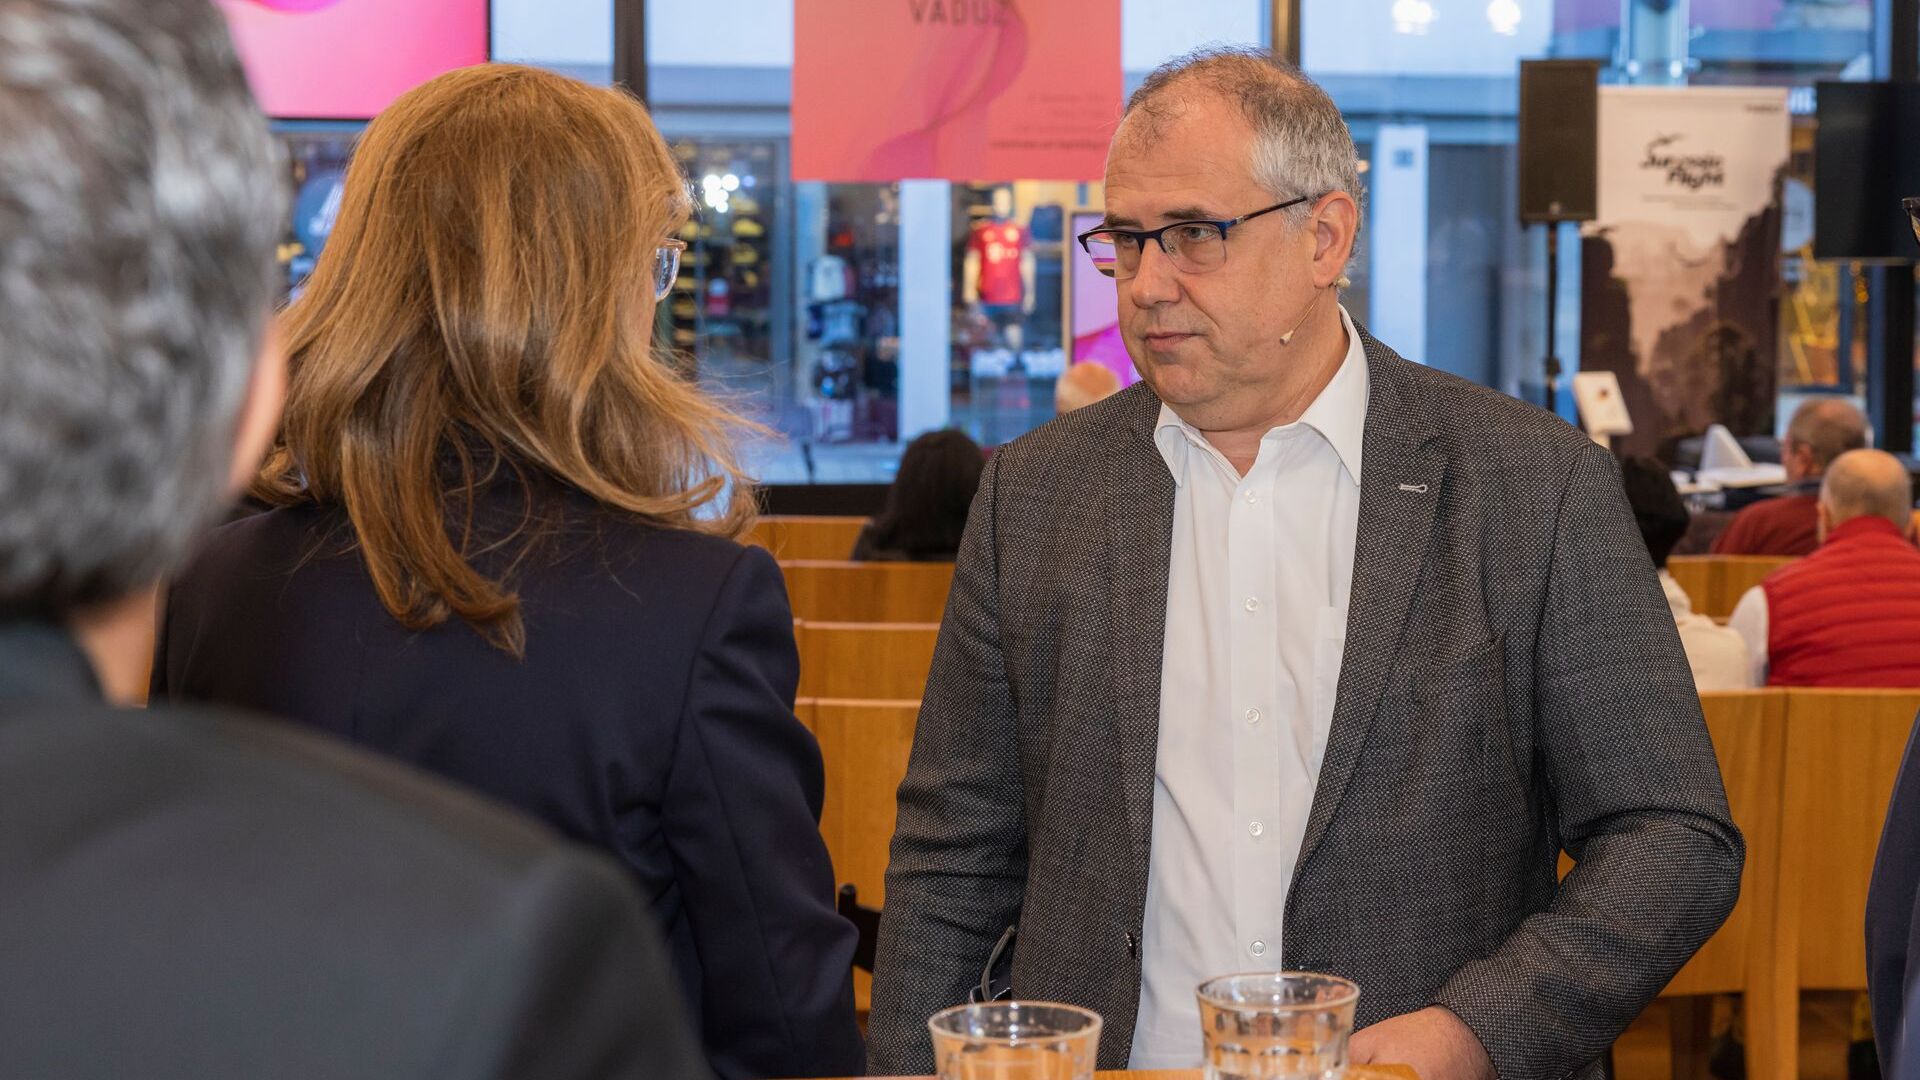 Le "Digitaltag Vaduz" a été accueilli par le Kunstmuseum de la capitale de la Principauté de Liechtenstein le samedi 6 novembre 2021 : en conversation Sabine Mounani, Vice-Premier Ministre, et Manfred Bischof, Maire de la capitale